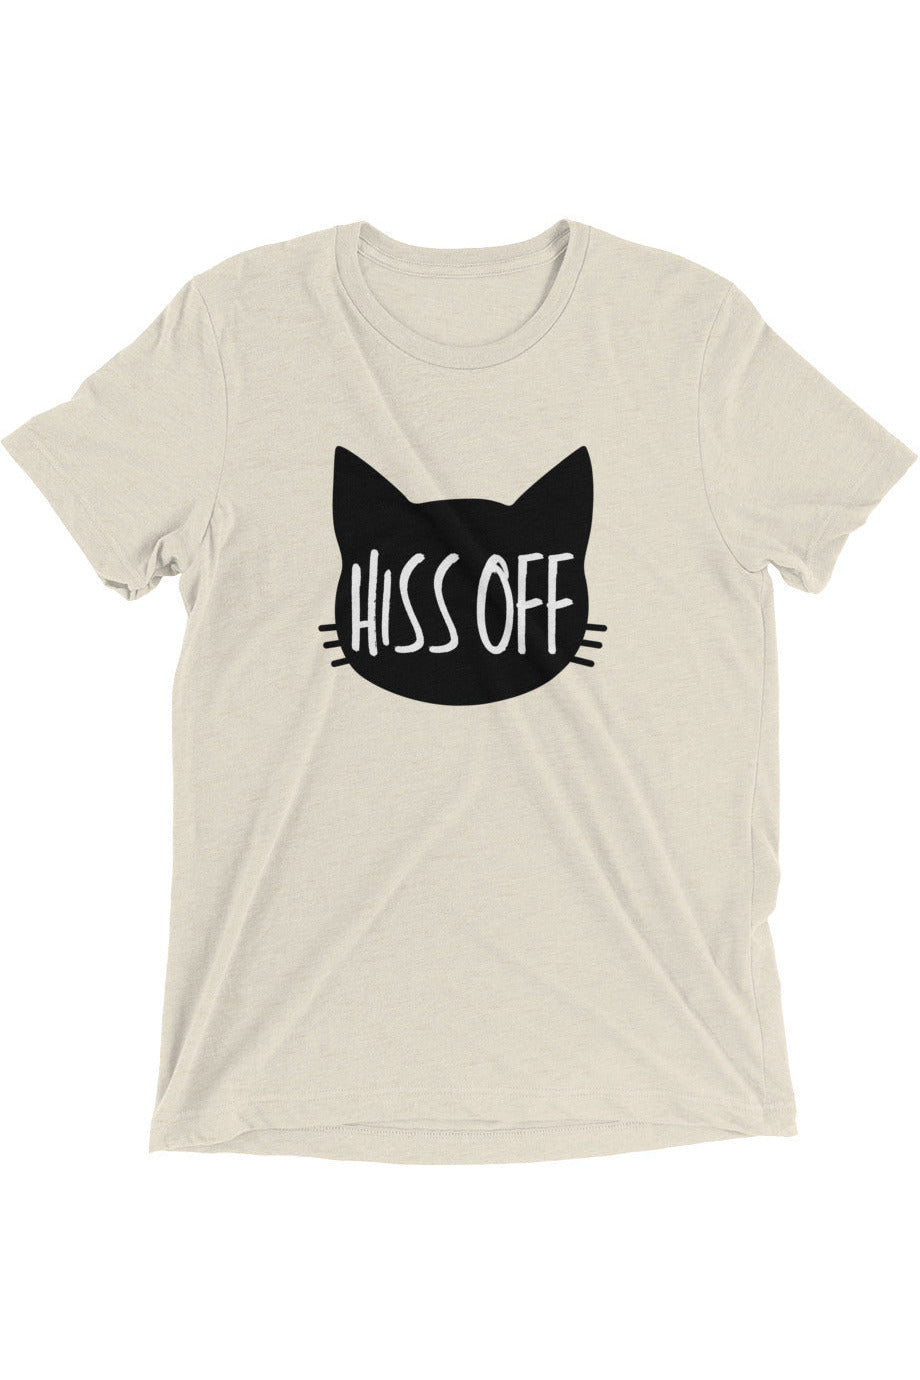 "Hiss Off" - Short sleeve t-shirt